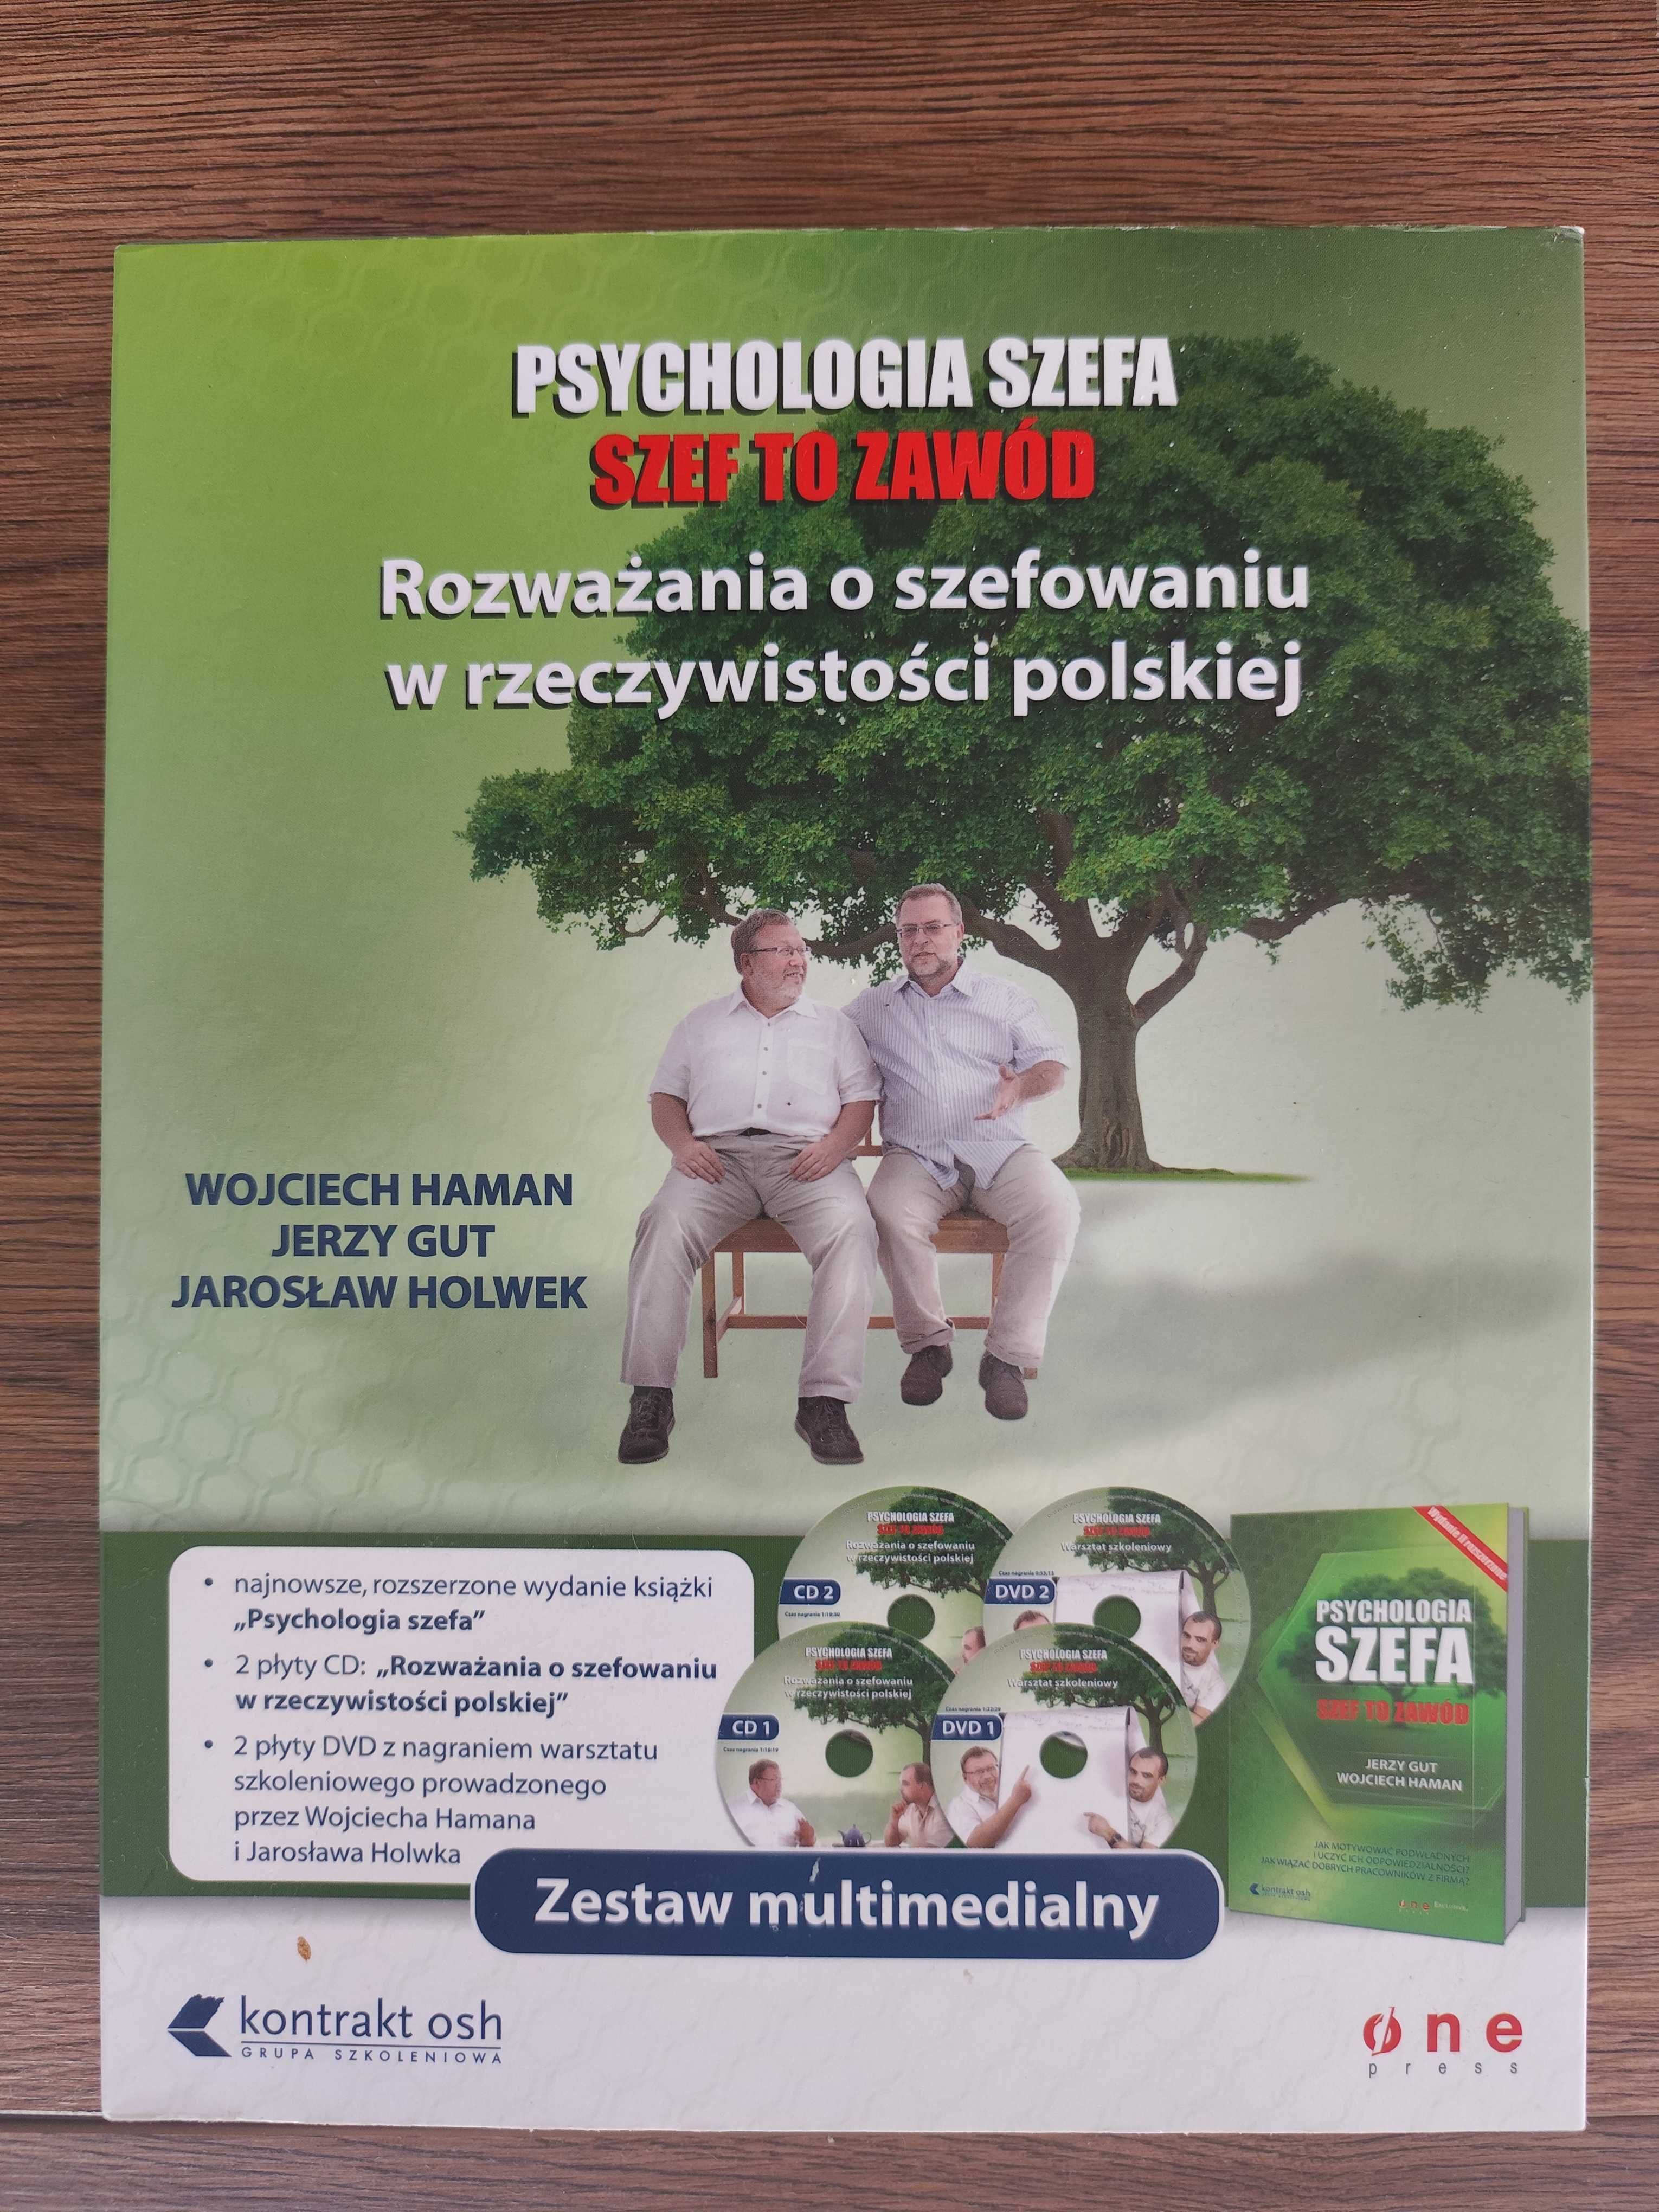 Psychologia Szefa- zestaw, książka i płyty. Nieużywany